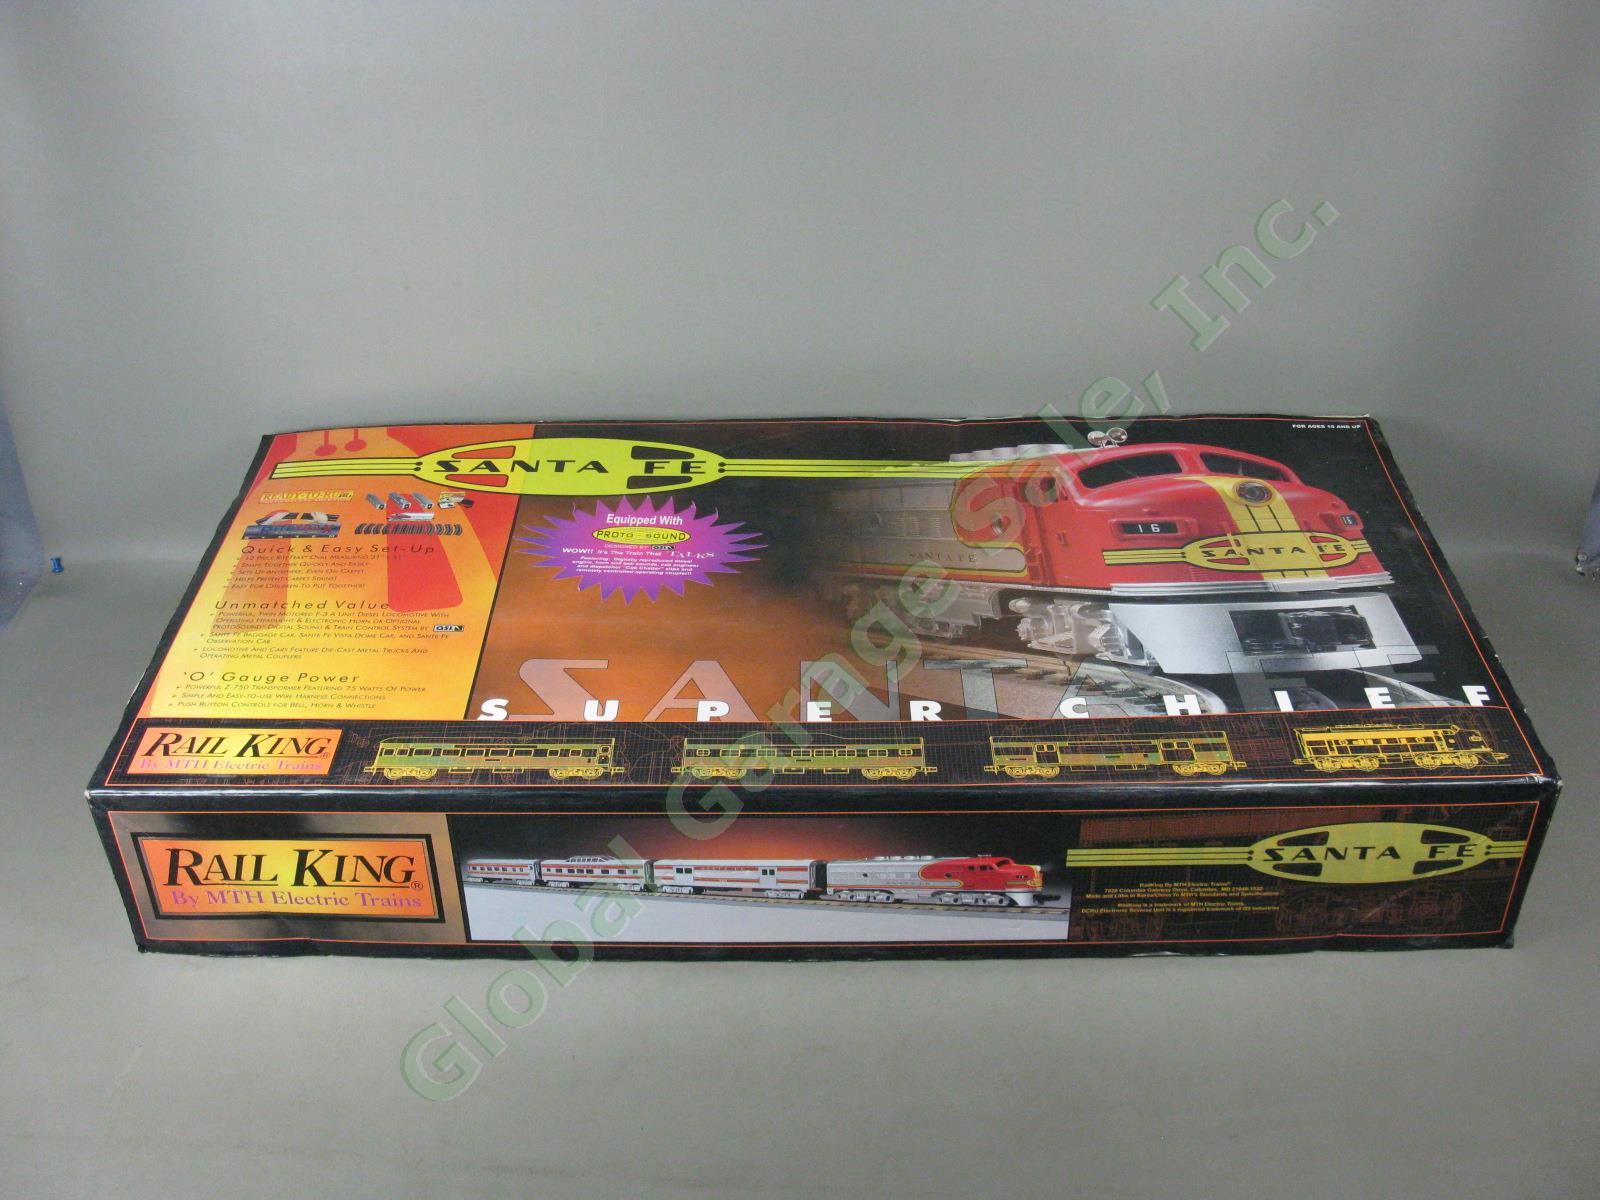 MTH Rail King Santa Fe Super Chief F-3 RTR Passenger Train Set W/ Box 30-4021-1